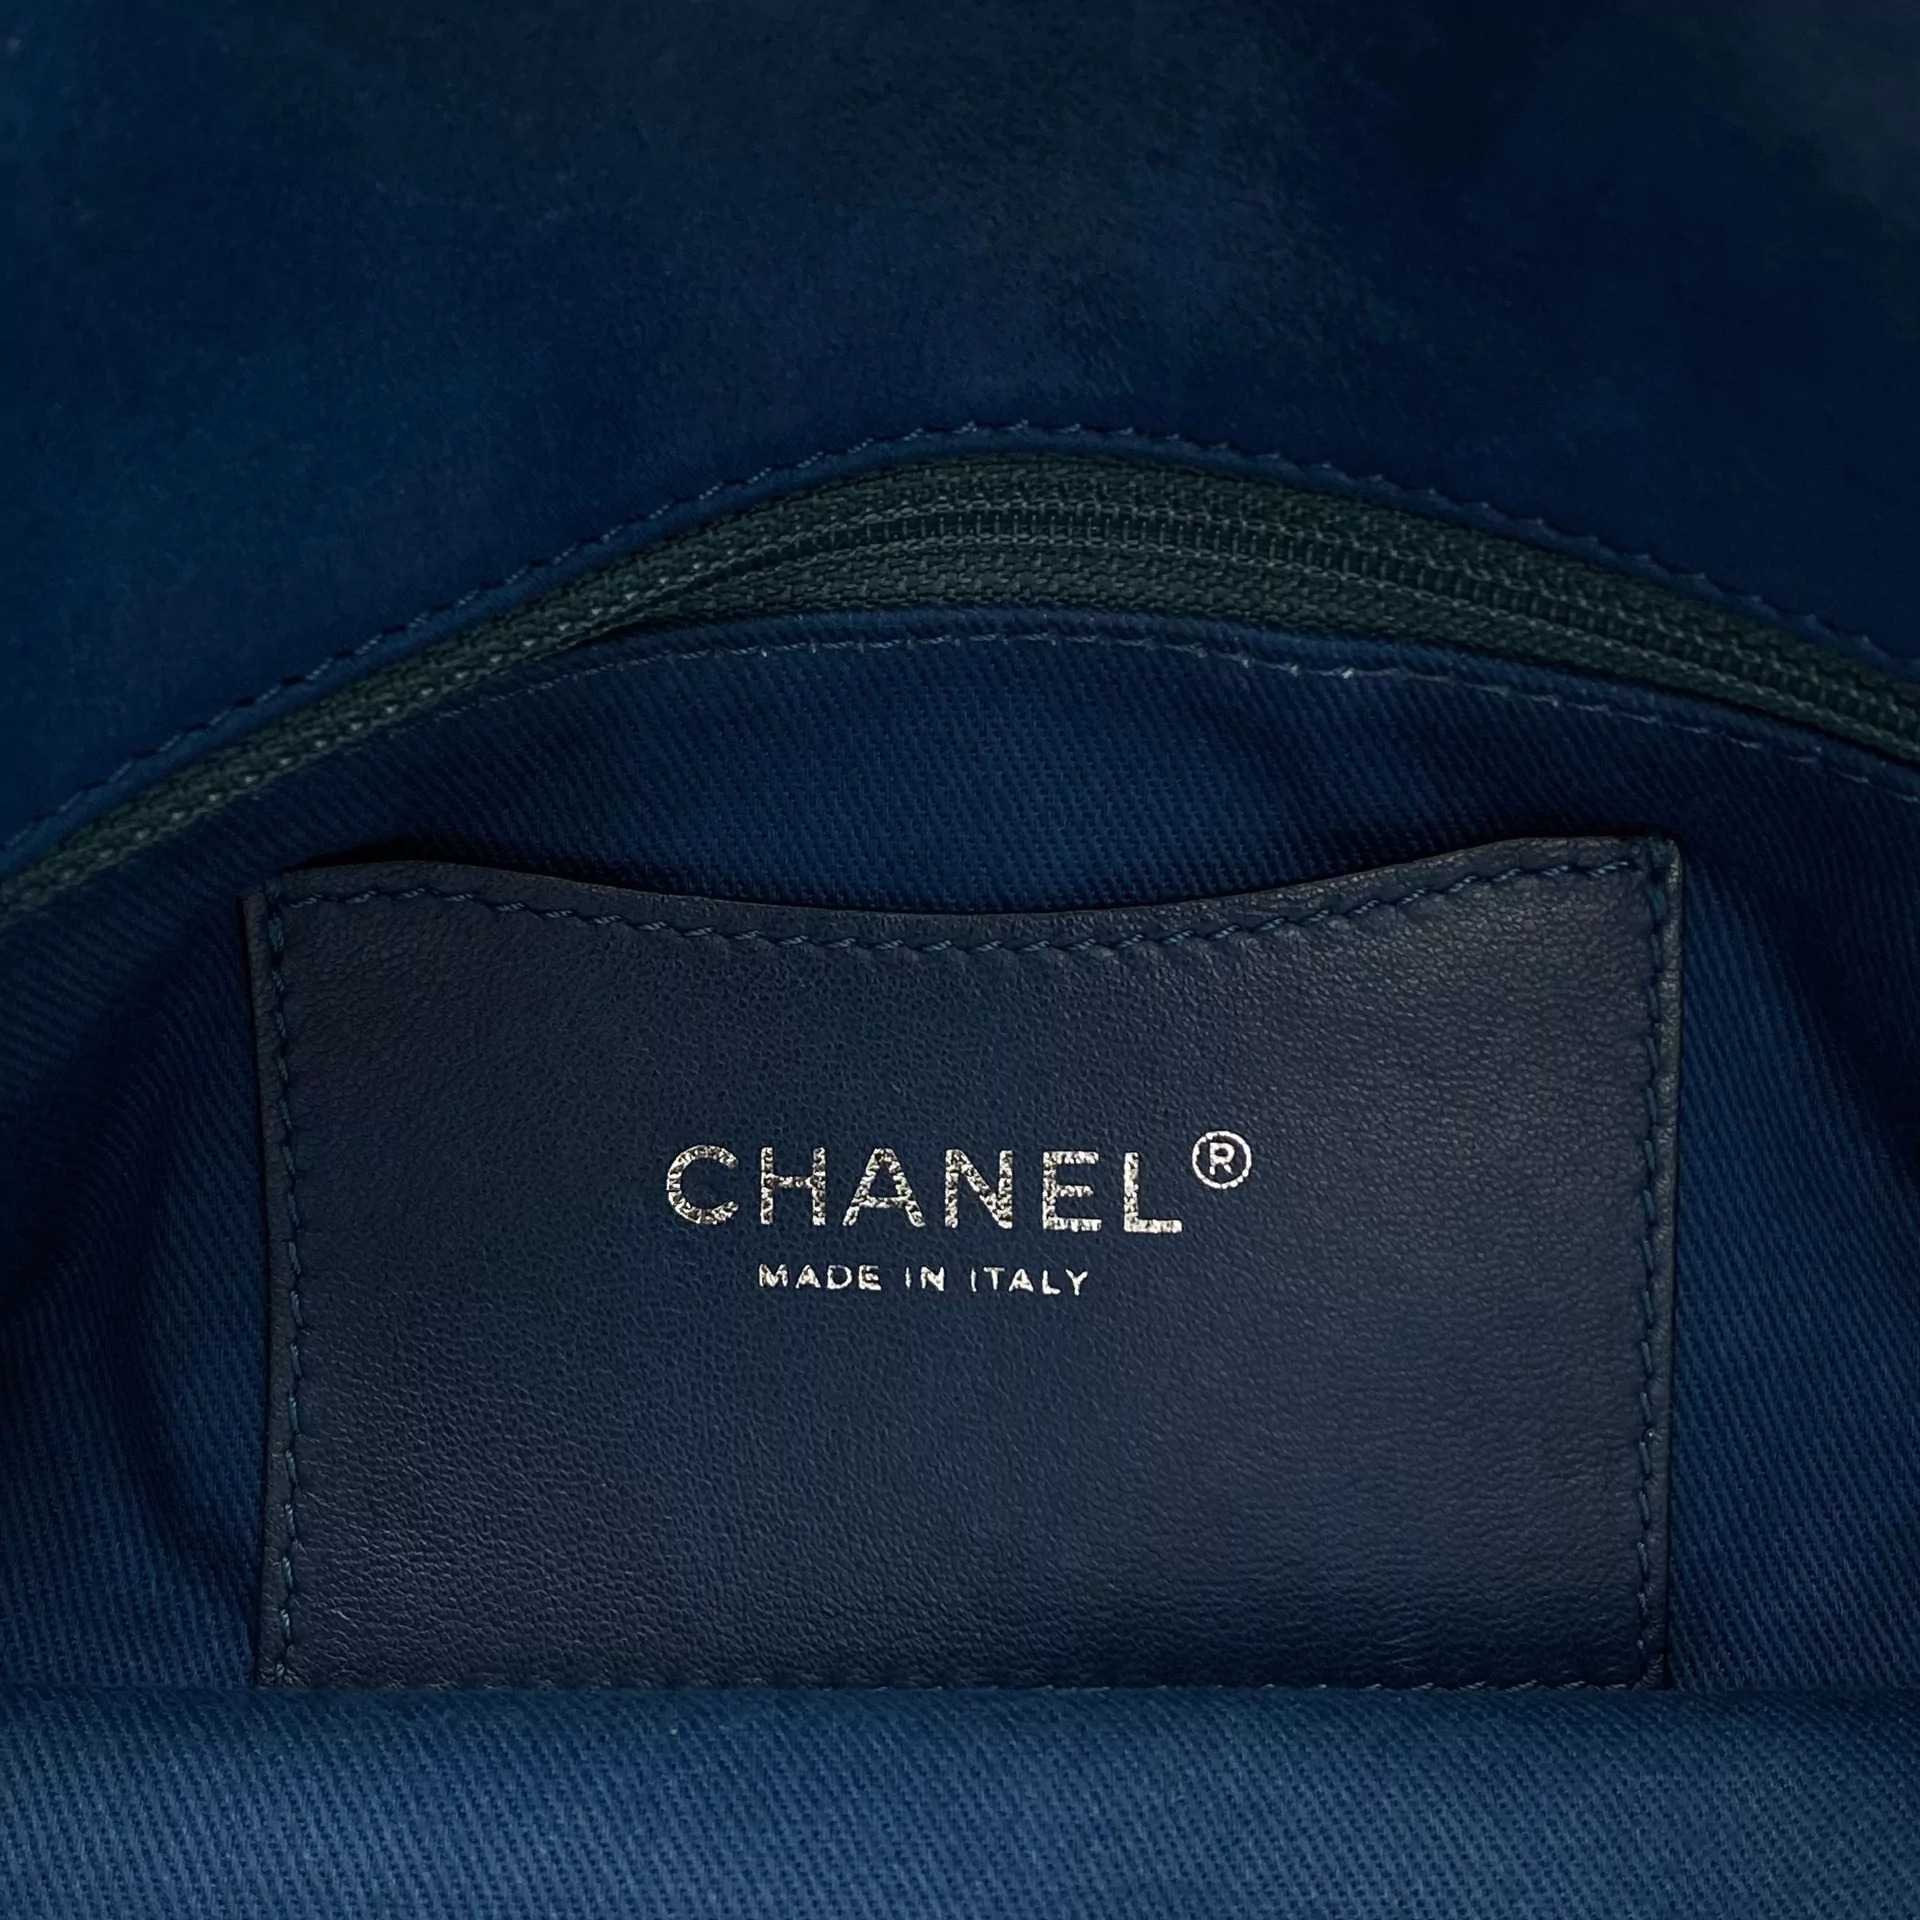 Bolsa Chanel Mademoiselle Turquesa